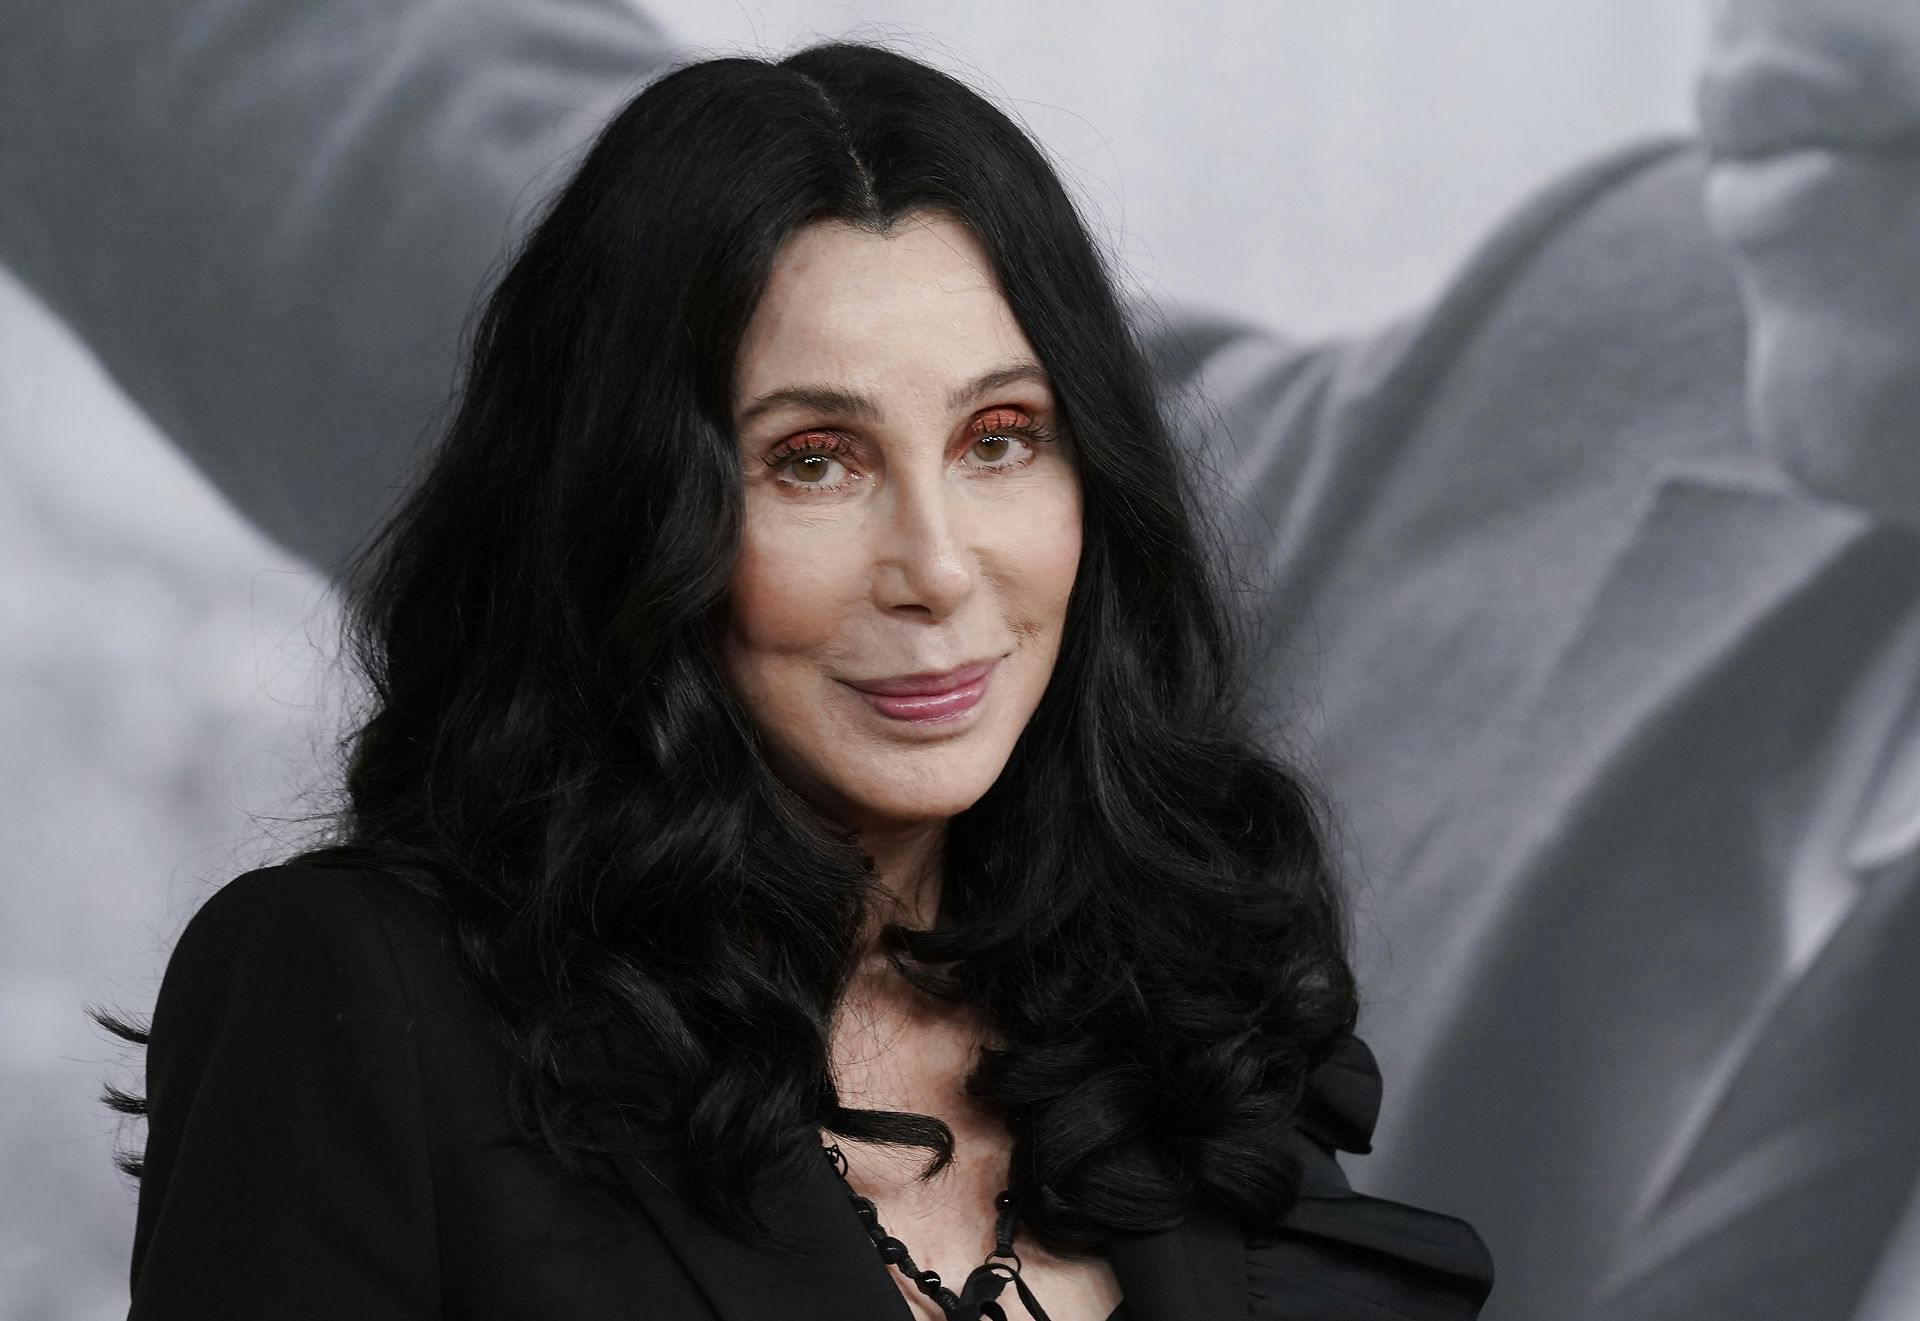 Sangerinden Cher dukkede til alles overraskelse op på catwalken onsdag.